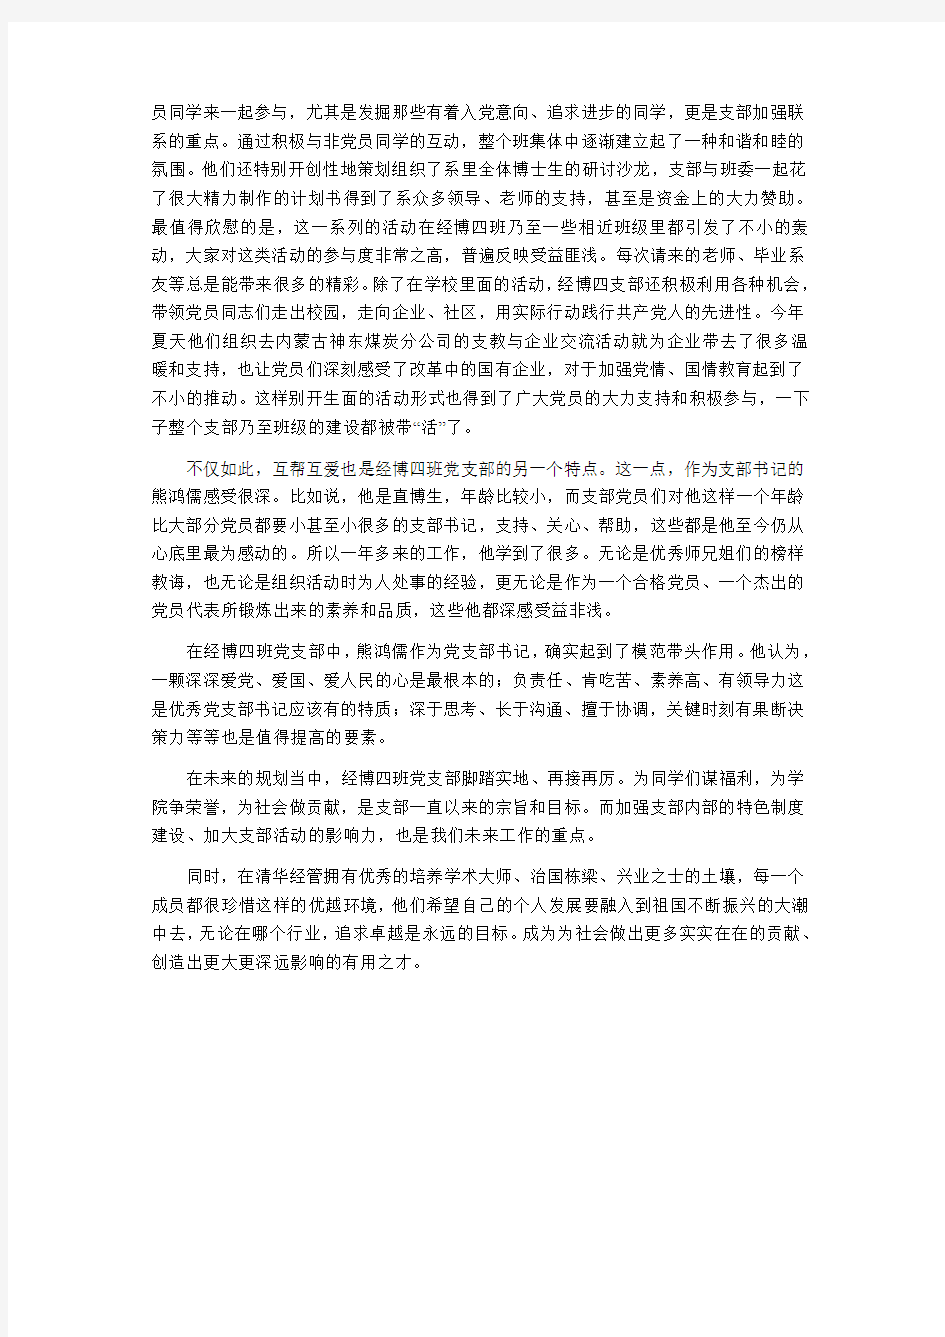 熊鸿儒-清华大学经济管理学院